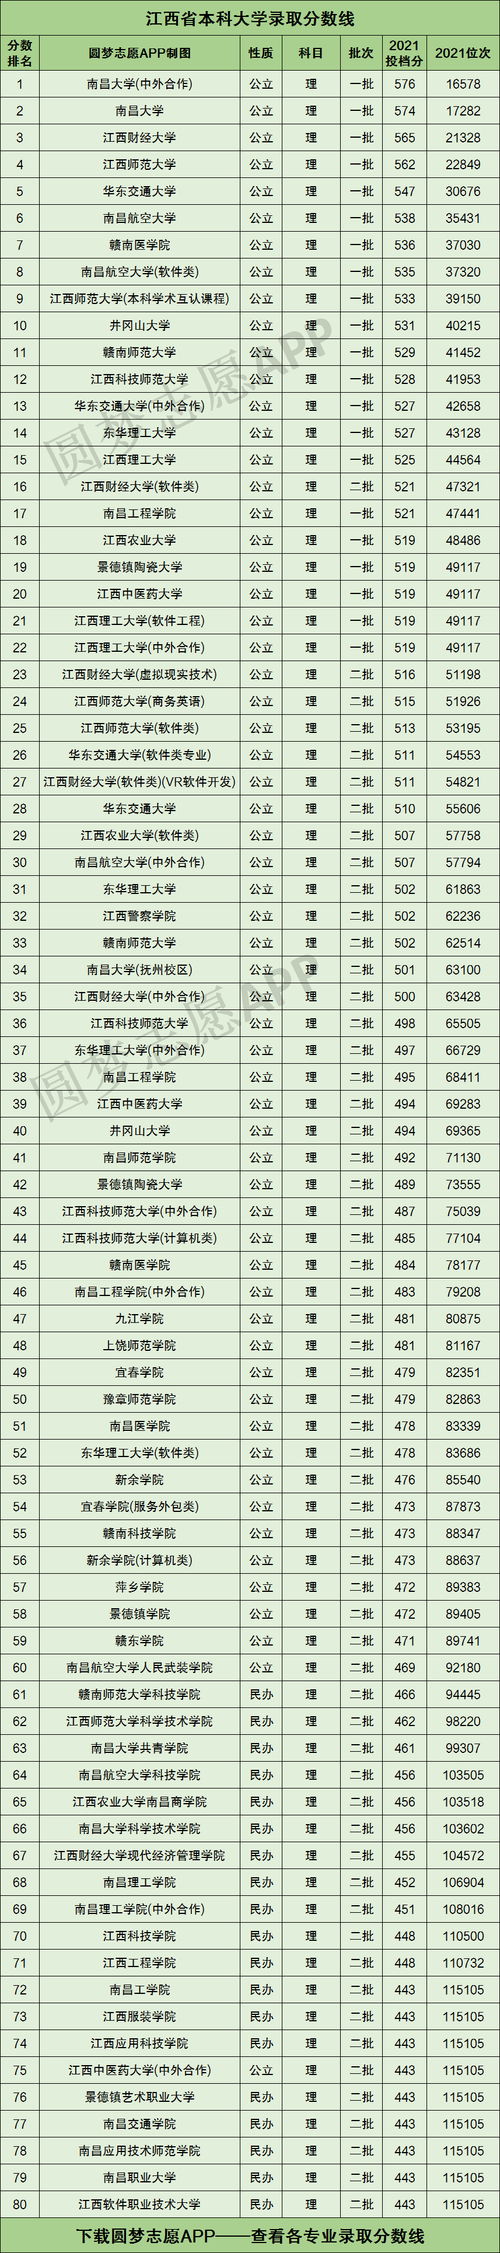 2018-2020年江西高考211大学投档线及最低录取位次统计表